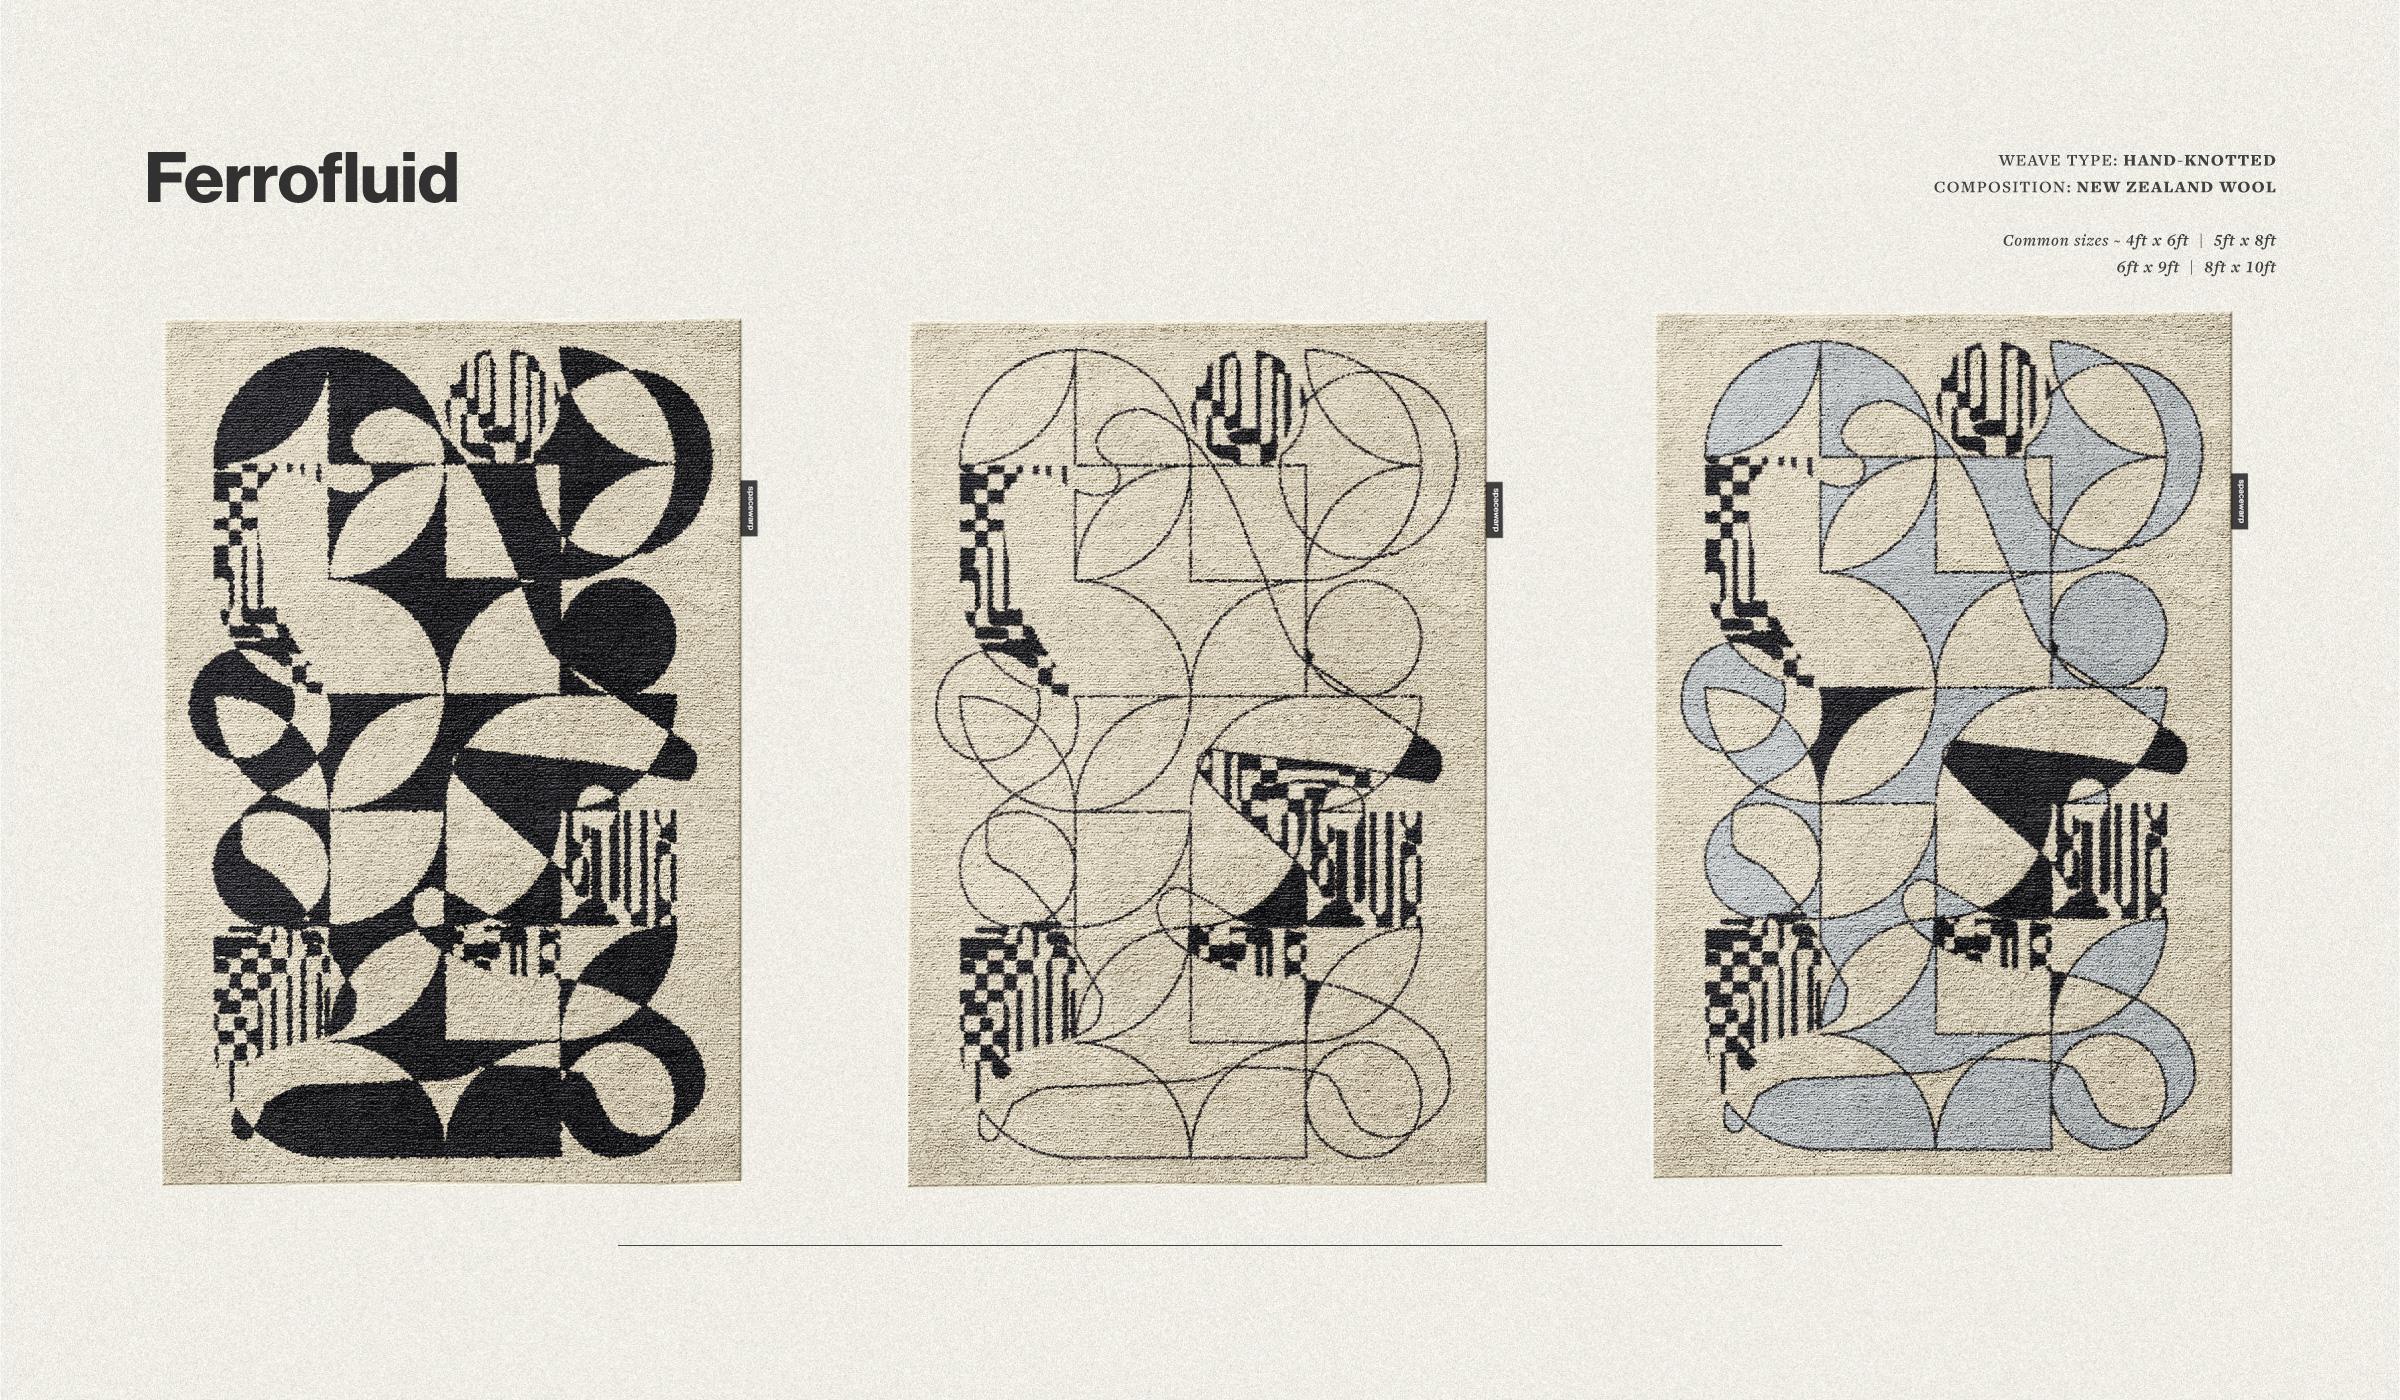  Eine amorphe Kunst, inspiriert durch die Kunststile von Victor Vasarely. Geometrische Blöcke und Formen verschmelzen miteinander zu einer amorphen Kunst. Ein visueller Leckerbissen für jeden Raum, in den er sich einfügt.

Als zeitgenössische